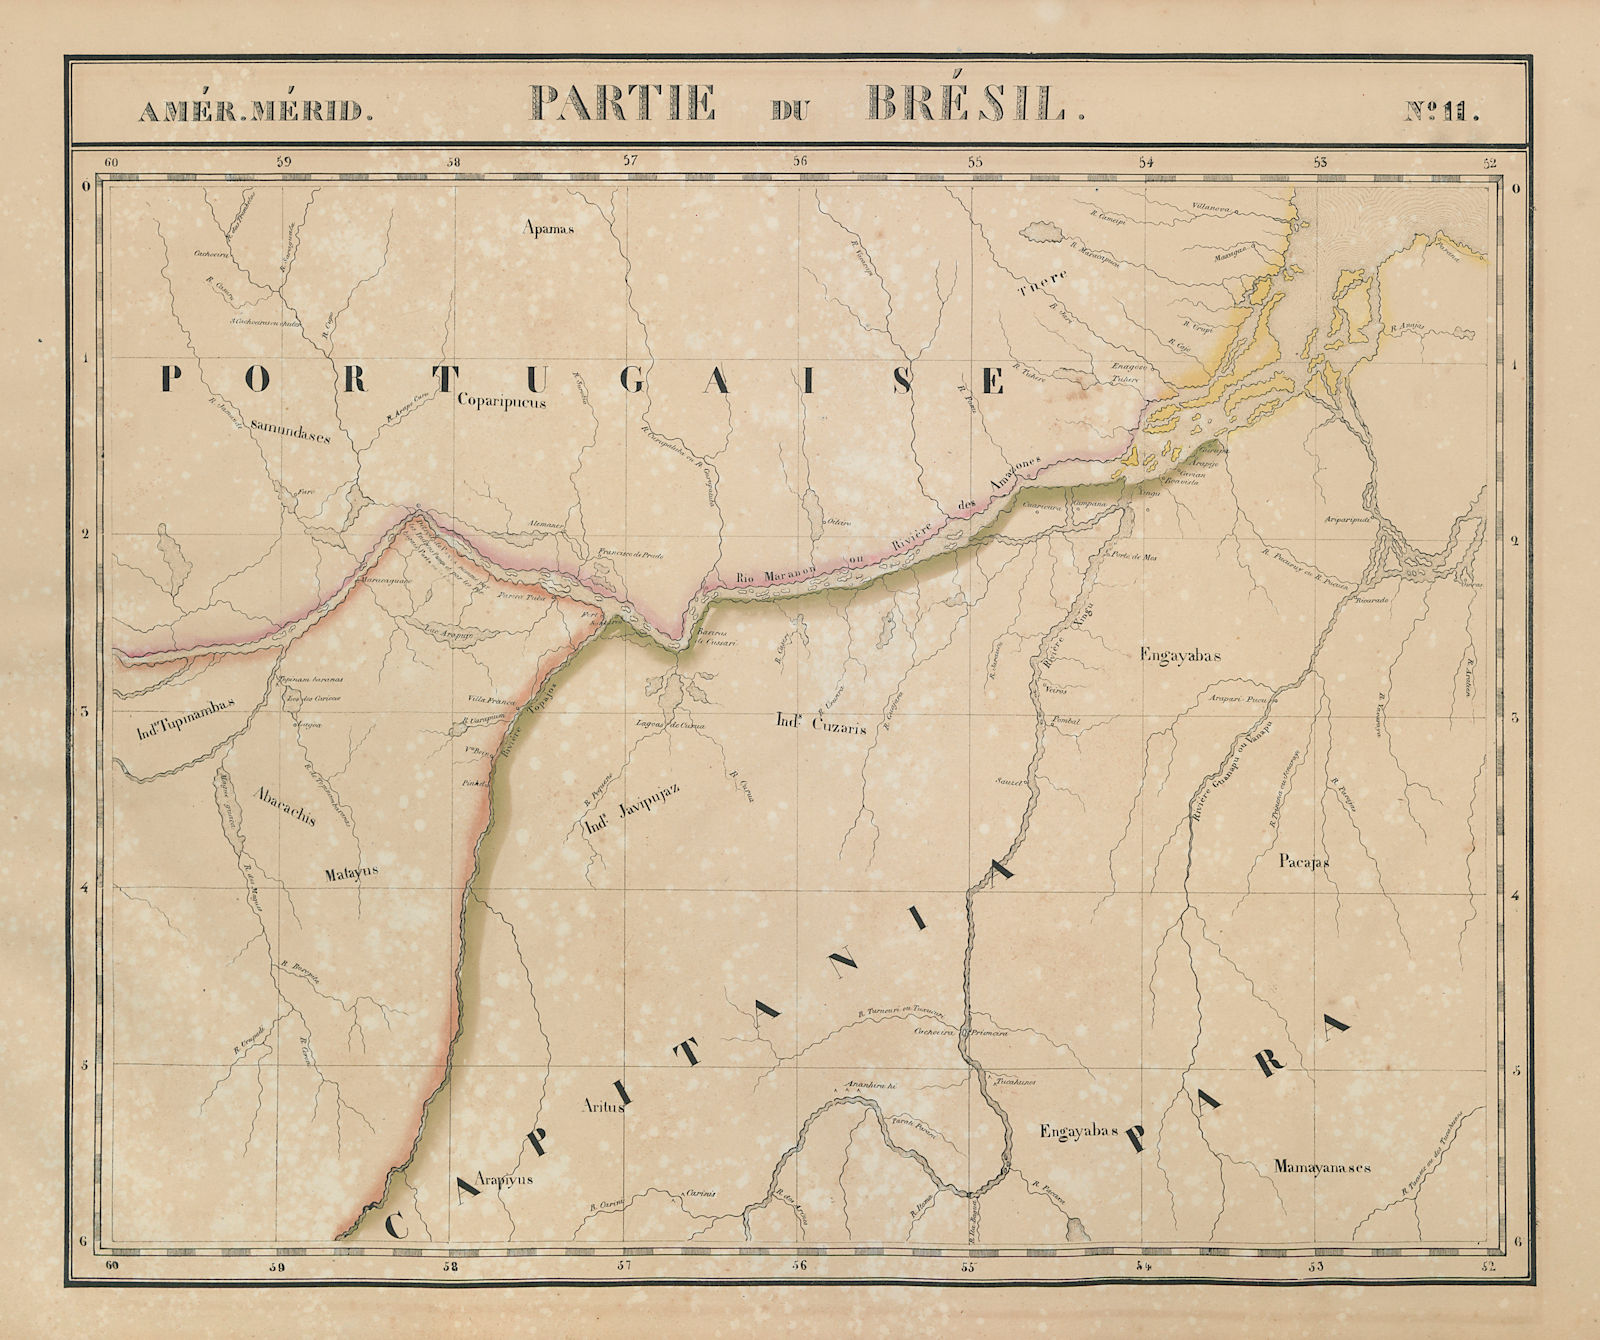 Amér. Mér. Brésil #11 Brazil. Lower Amazon in Para & Amapa VANDERMAELEN 1827